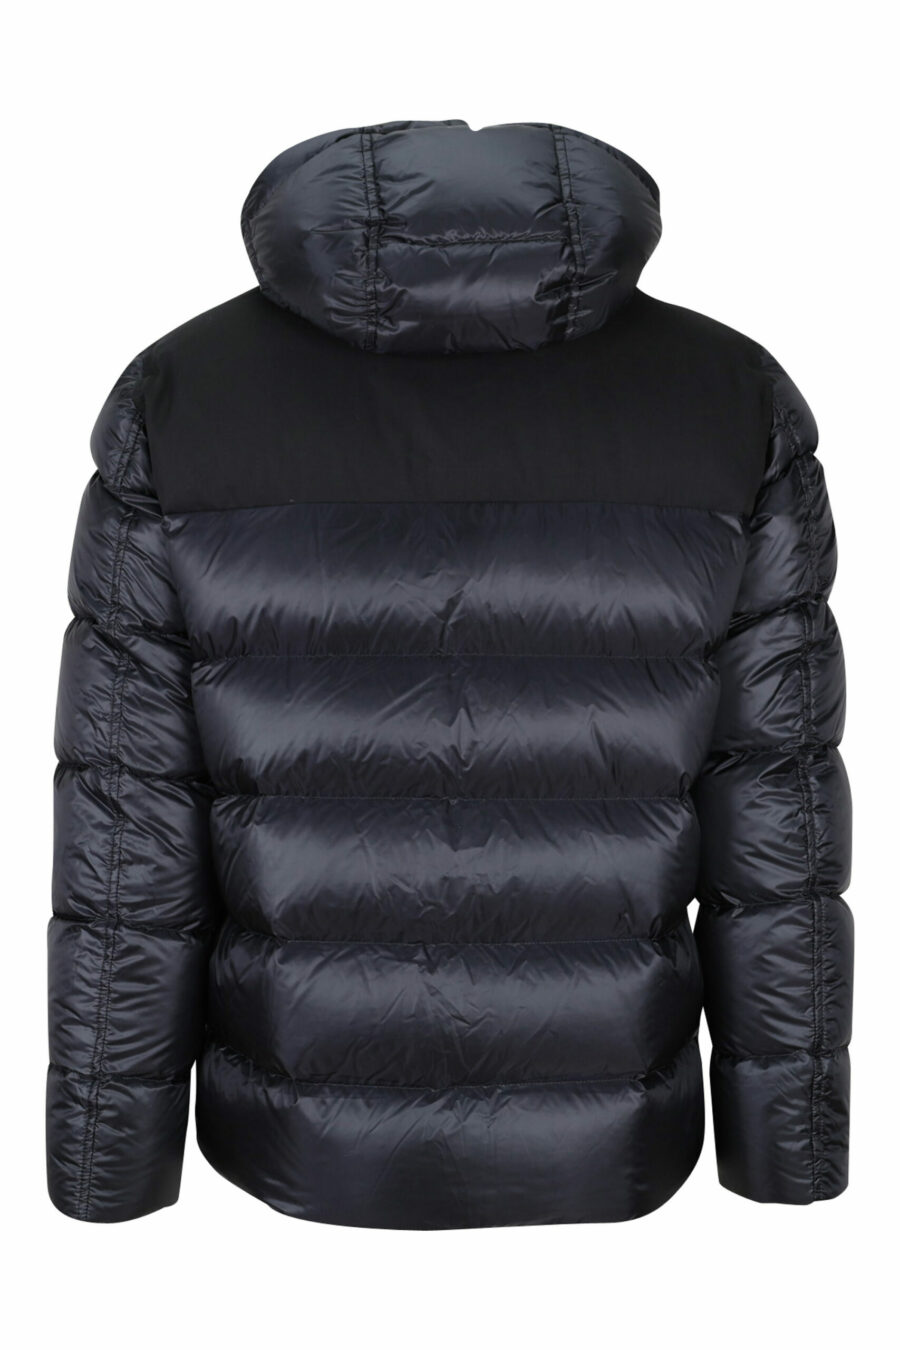 Black mix jacket with hood - 8055721704395 2 scaled